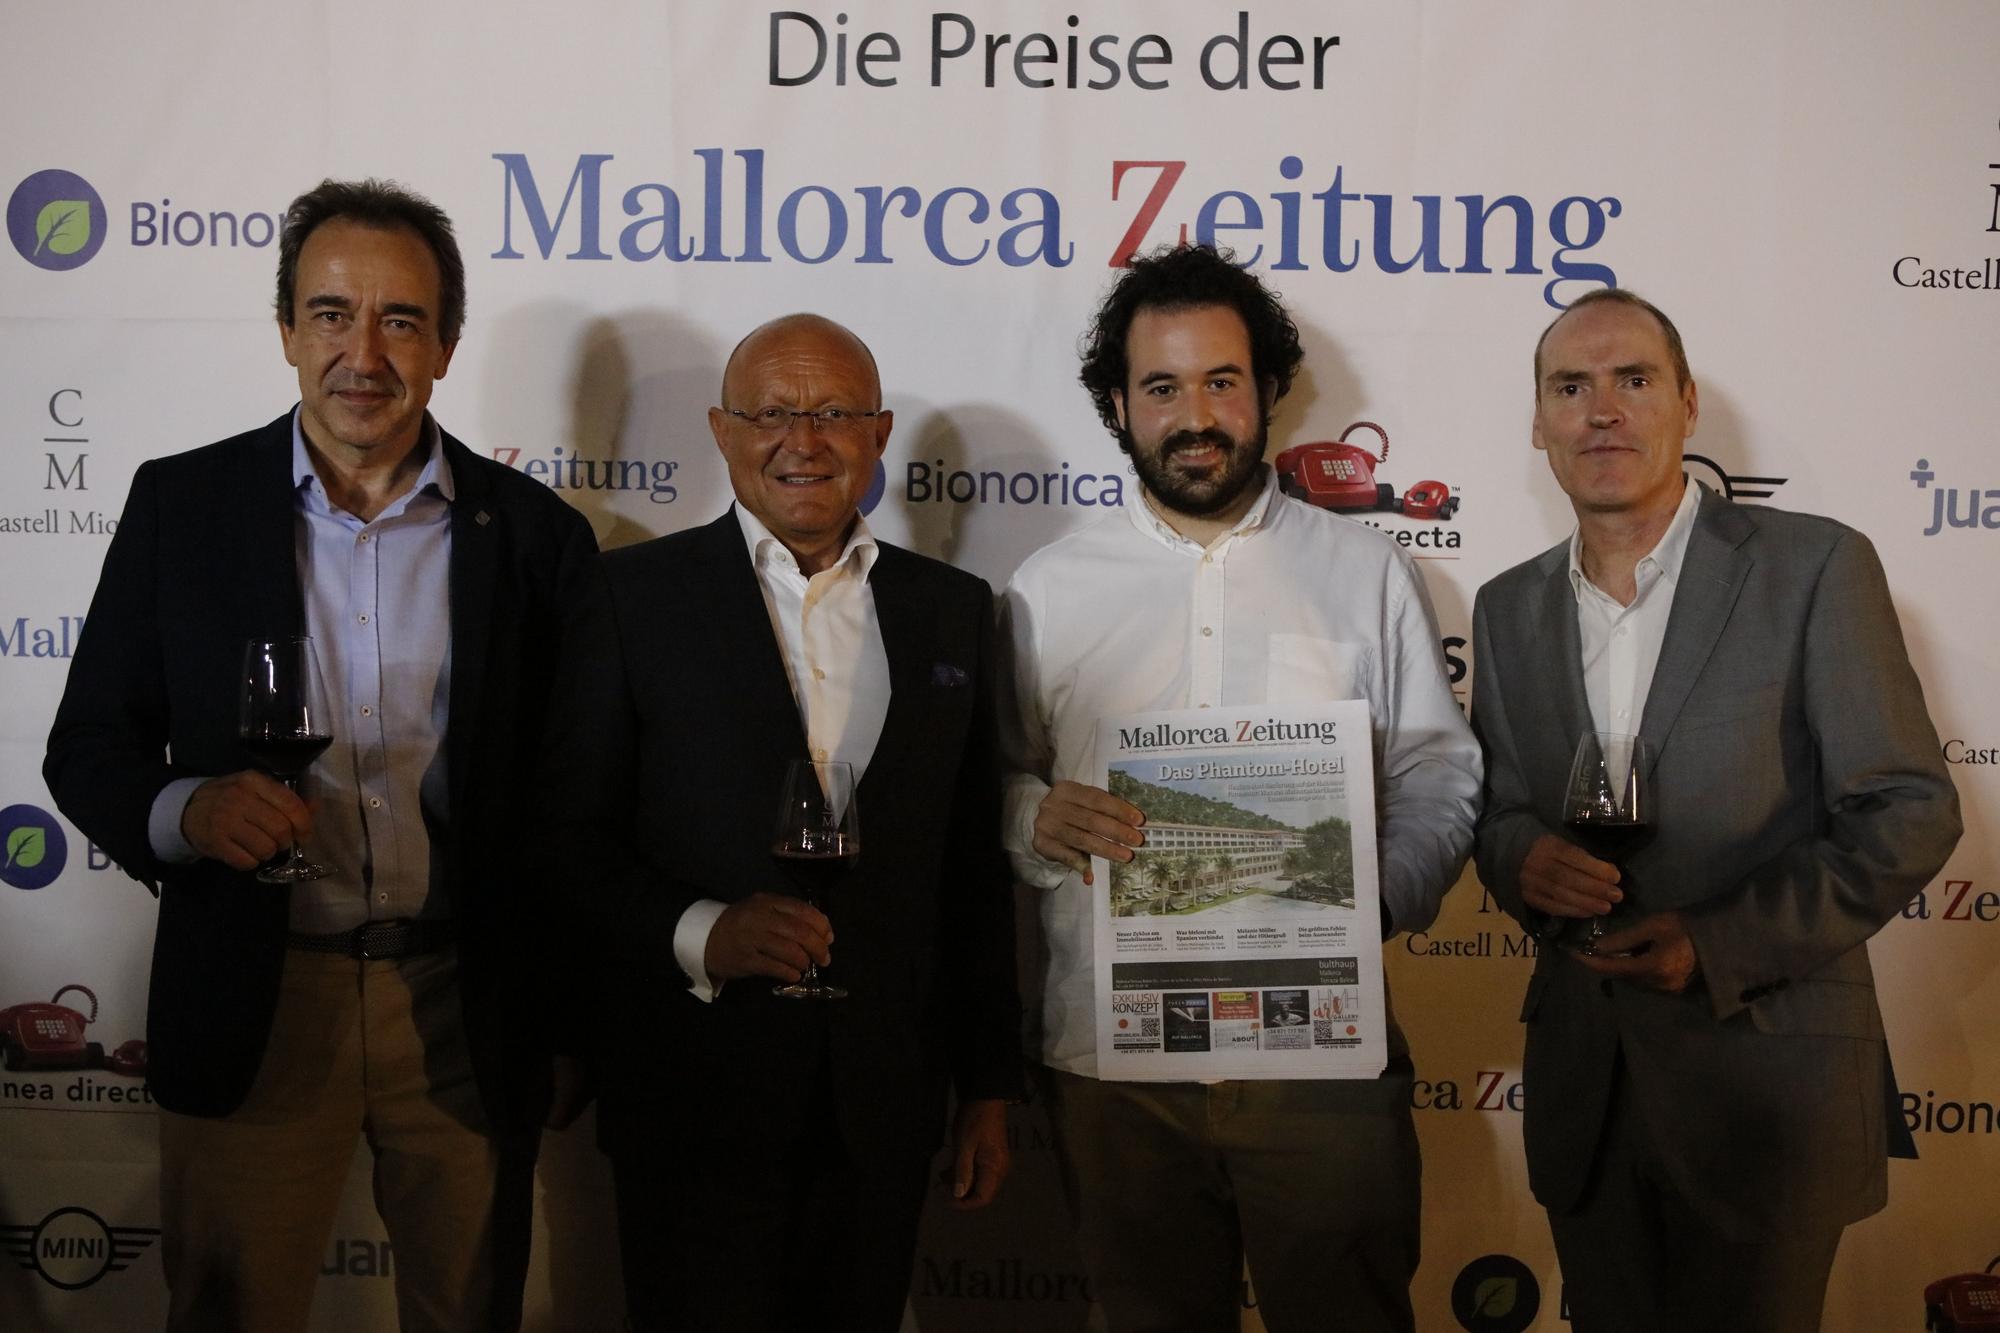 Die Preise der Mallorca Zeitung 2022 - Noch mehr schöne Bilder